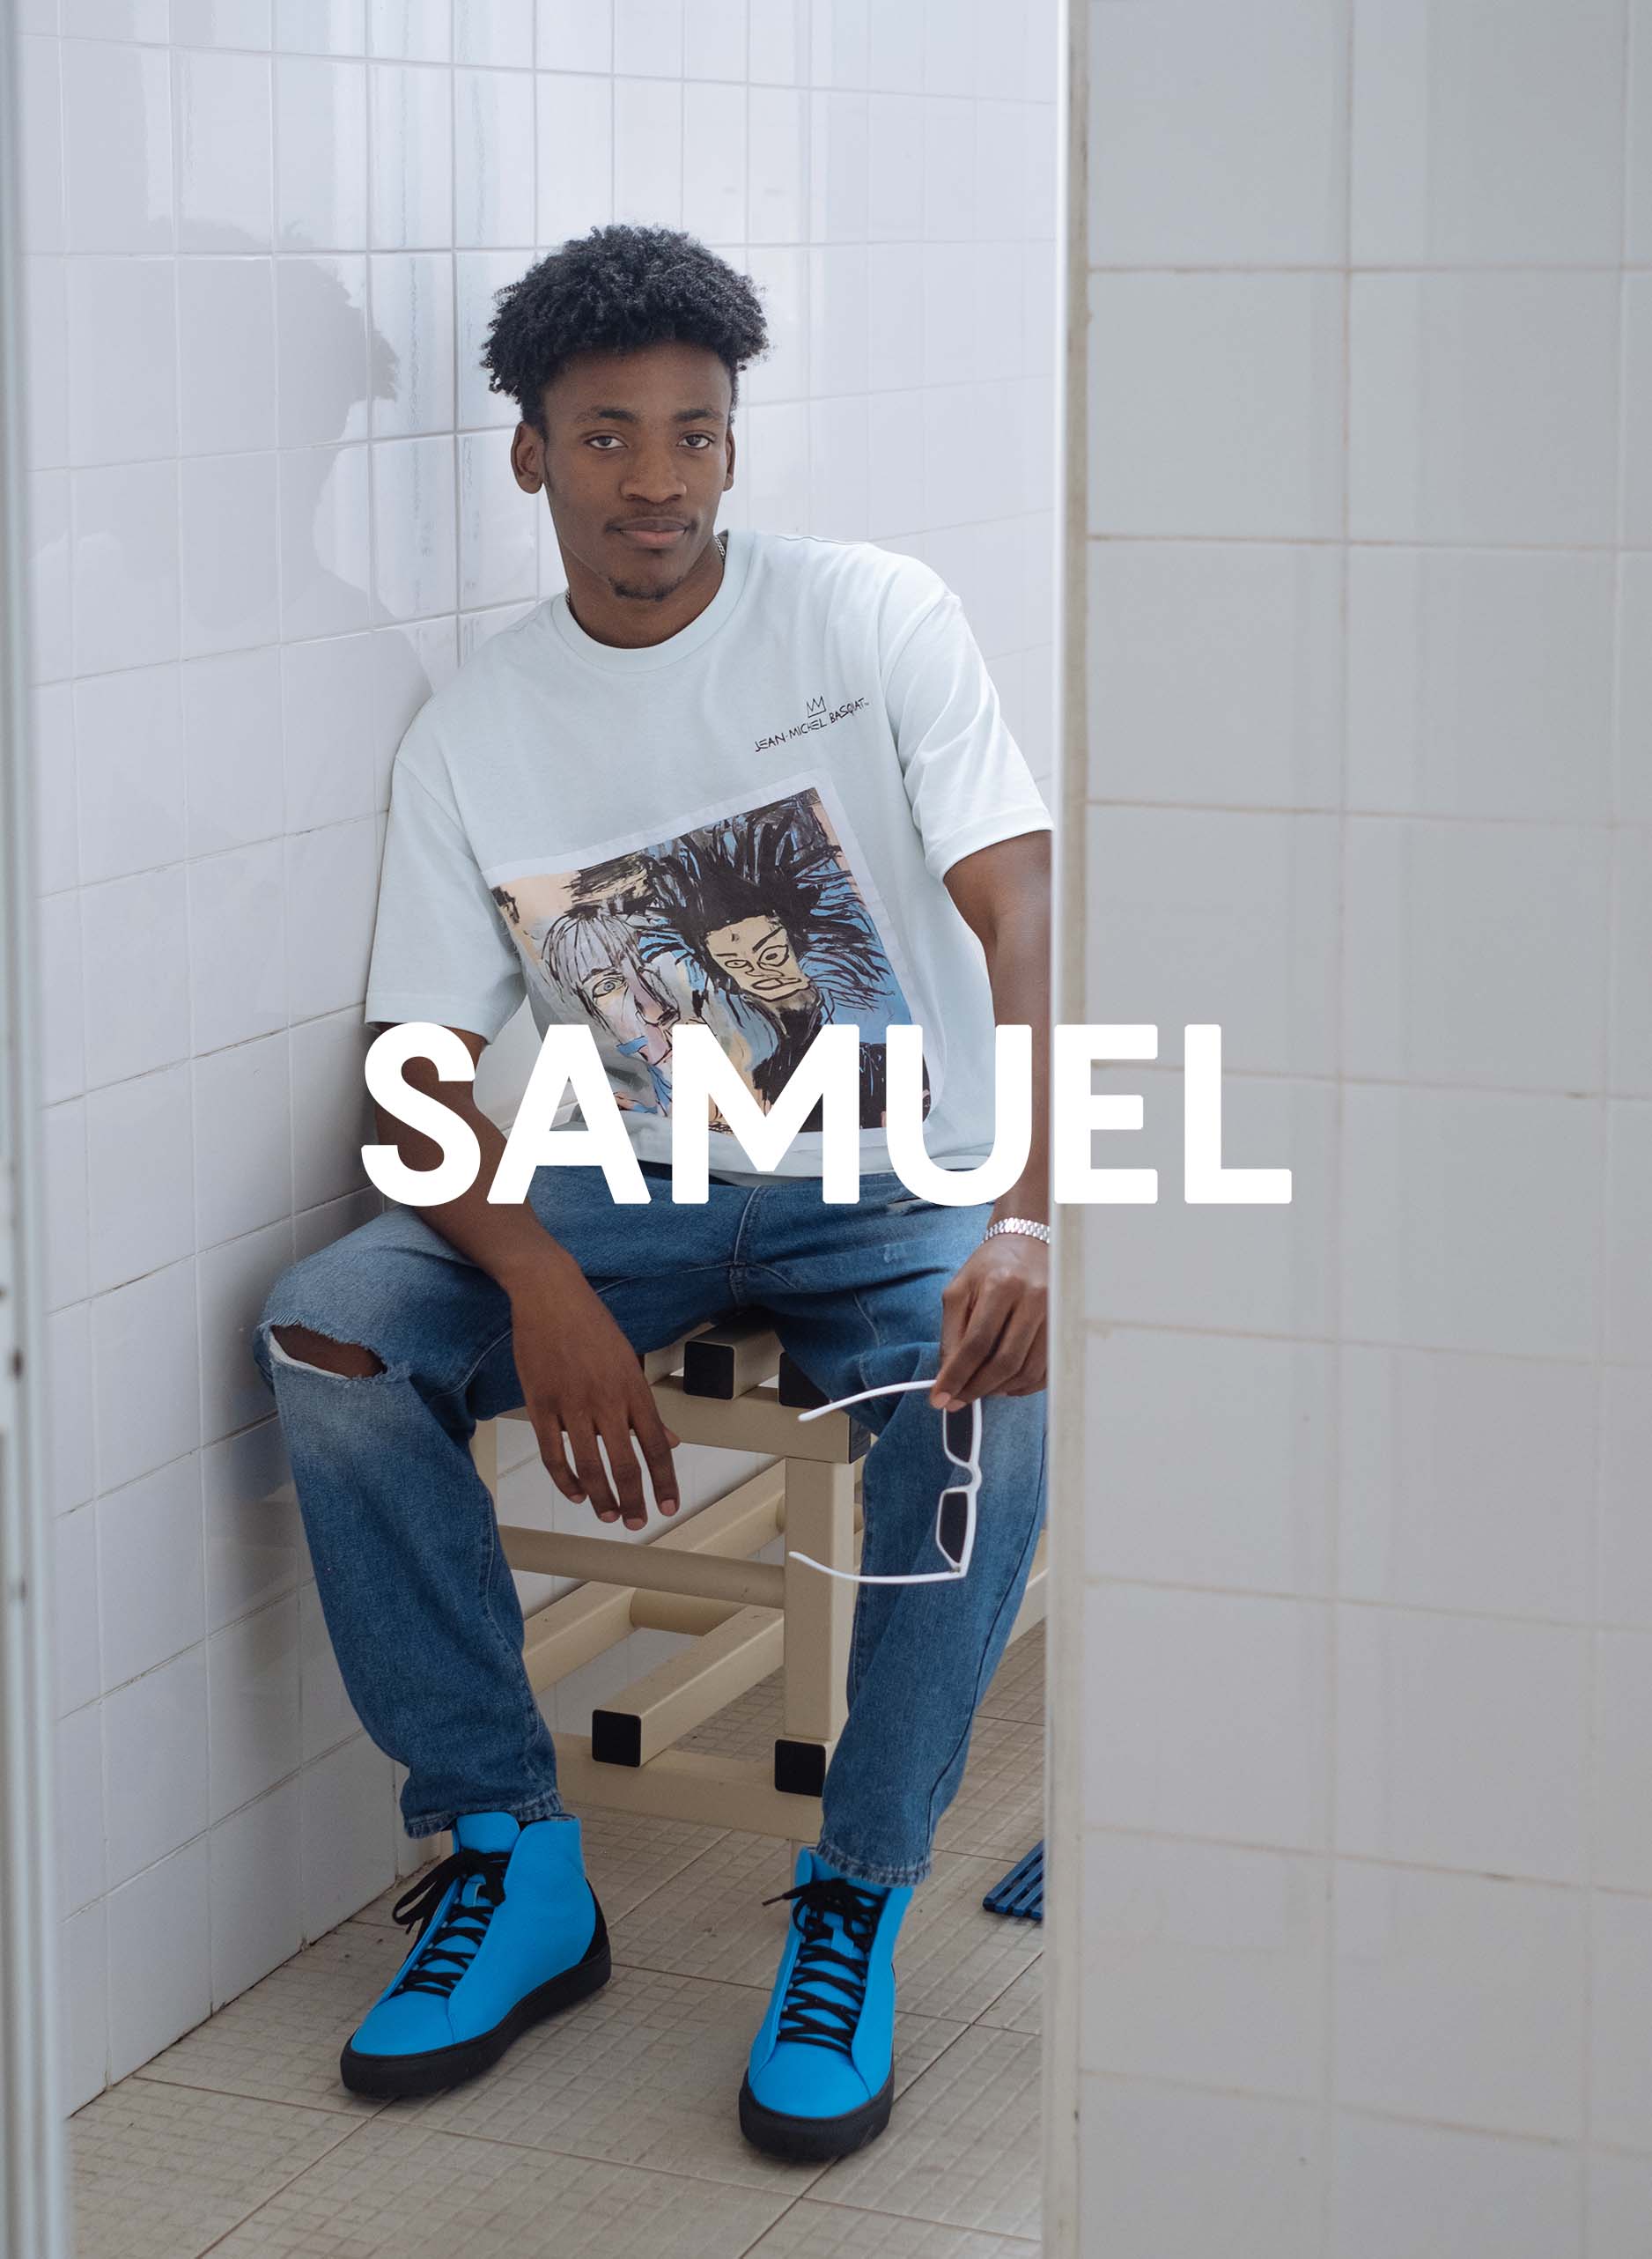 Samuele che indossa Diverge sneakers e mettendo in mostra l'impatto sociale e le scarpe personalizzate attraverso il progetto Imagine.